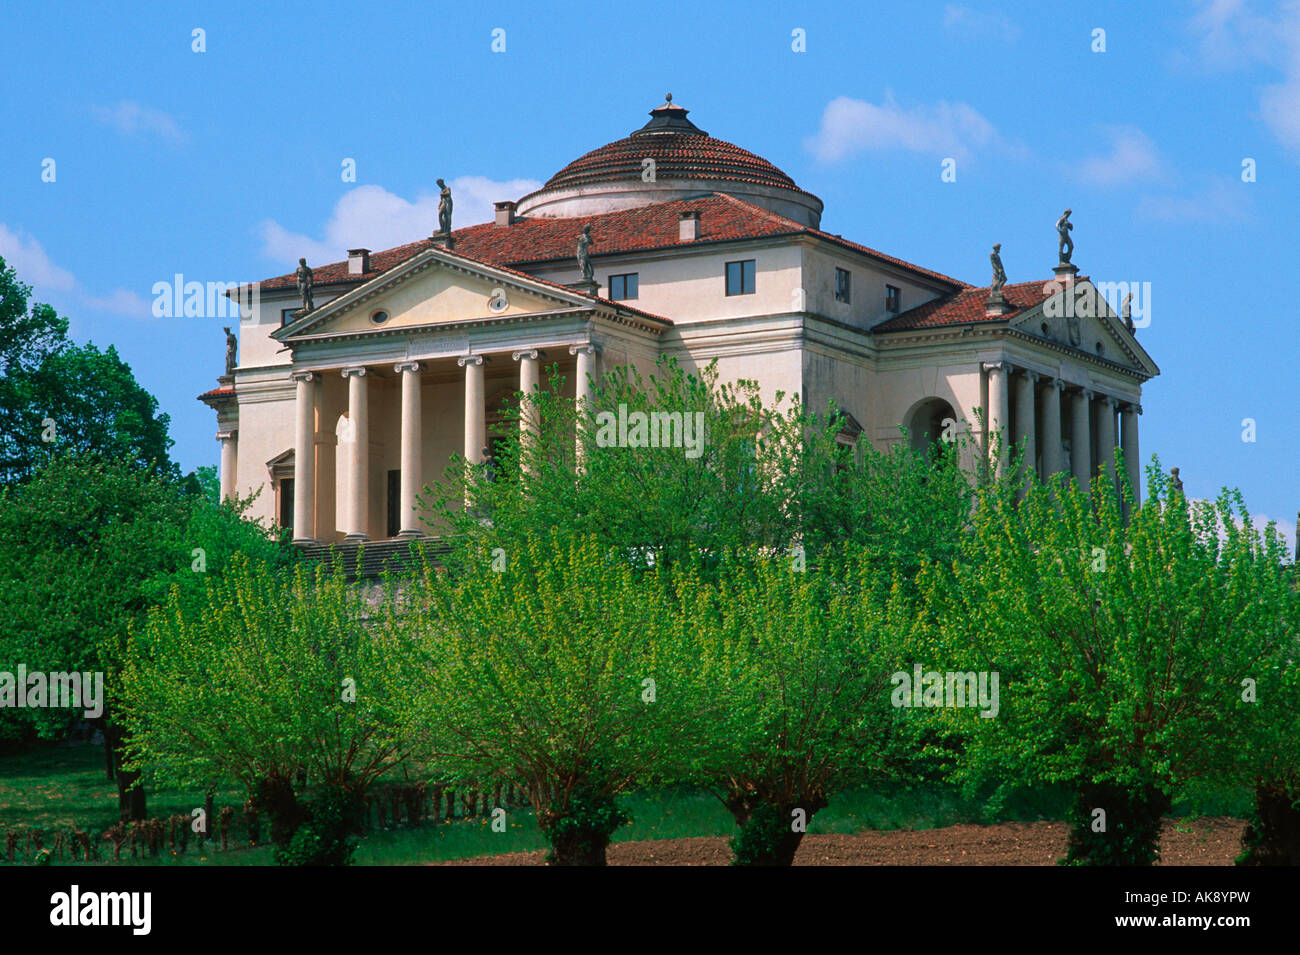 Villa Rotonda / Vicenza Stock Photo